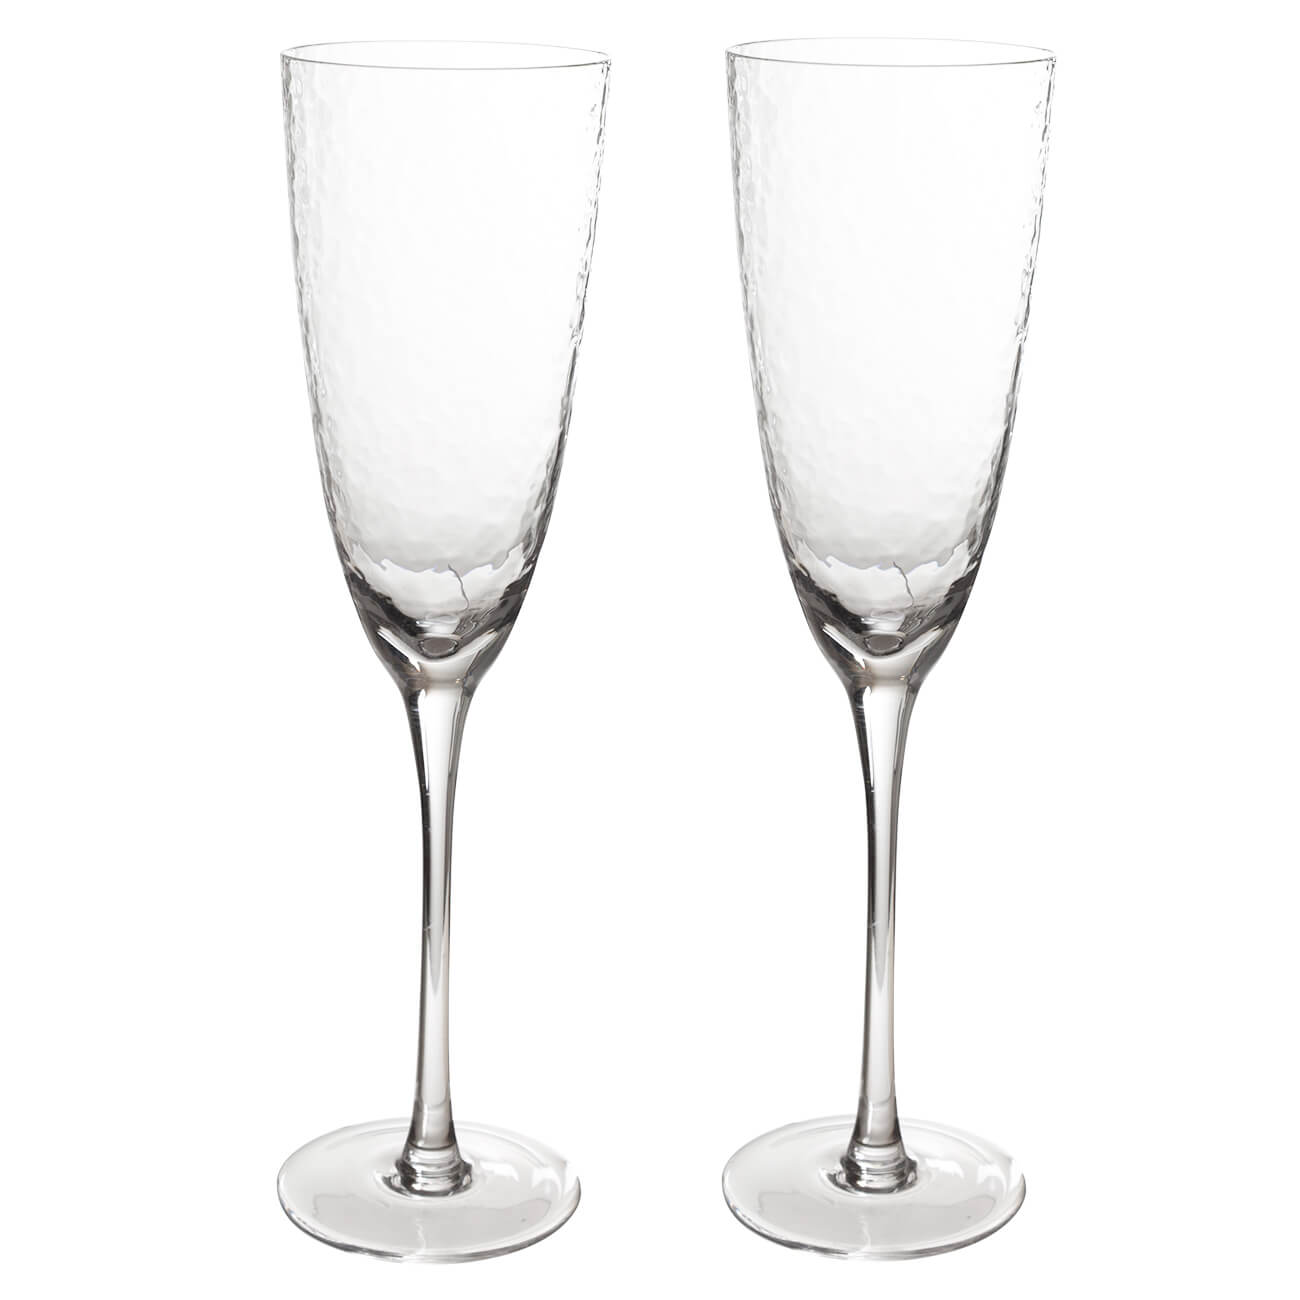 Бокал для шампанского, 275 мл, 2 шт, стекло, Ripply бокал для мартини 250 мл 2 шт стекло перламутр ripply polar